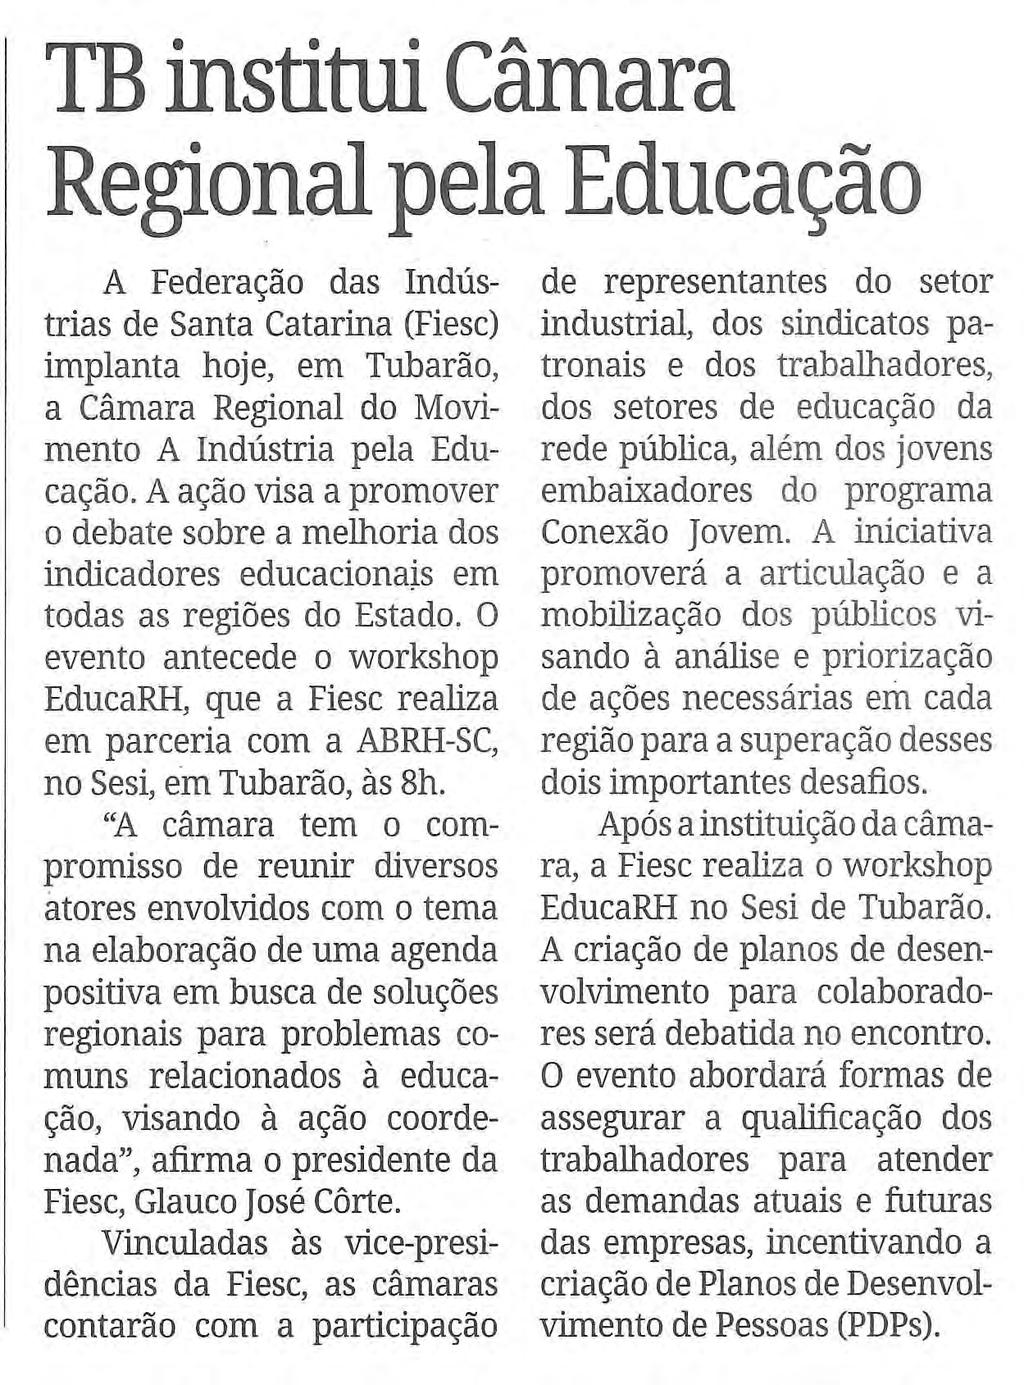 Título: TB institui Câmara Regional pela Educação - Data: 10/07/2015 -